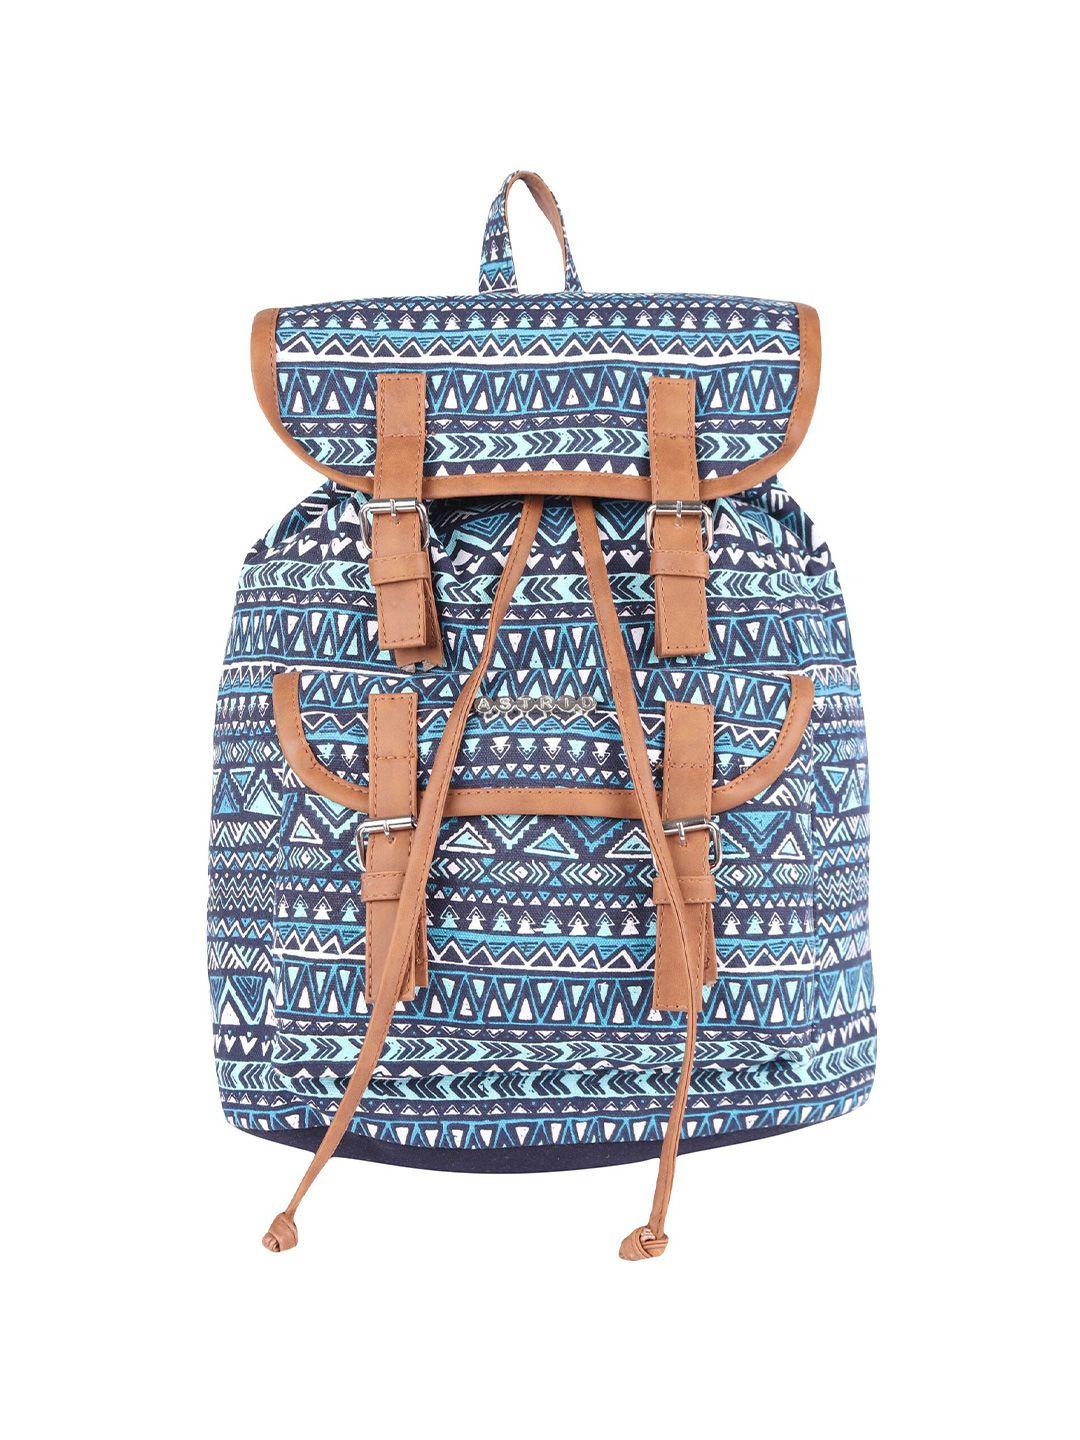 astrid girls blue & white geometric backpack